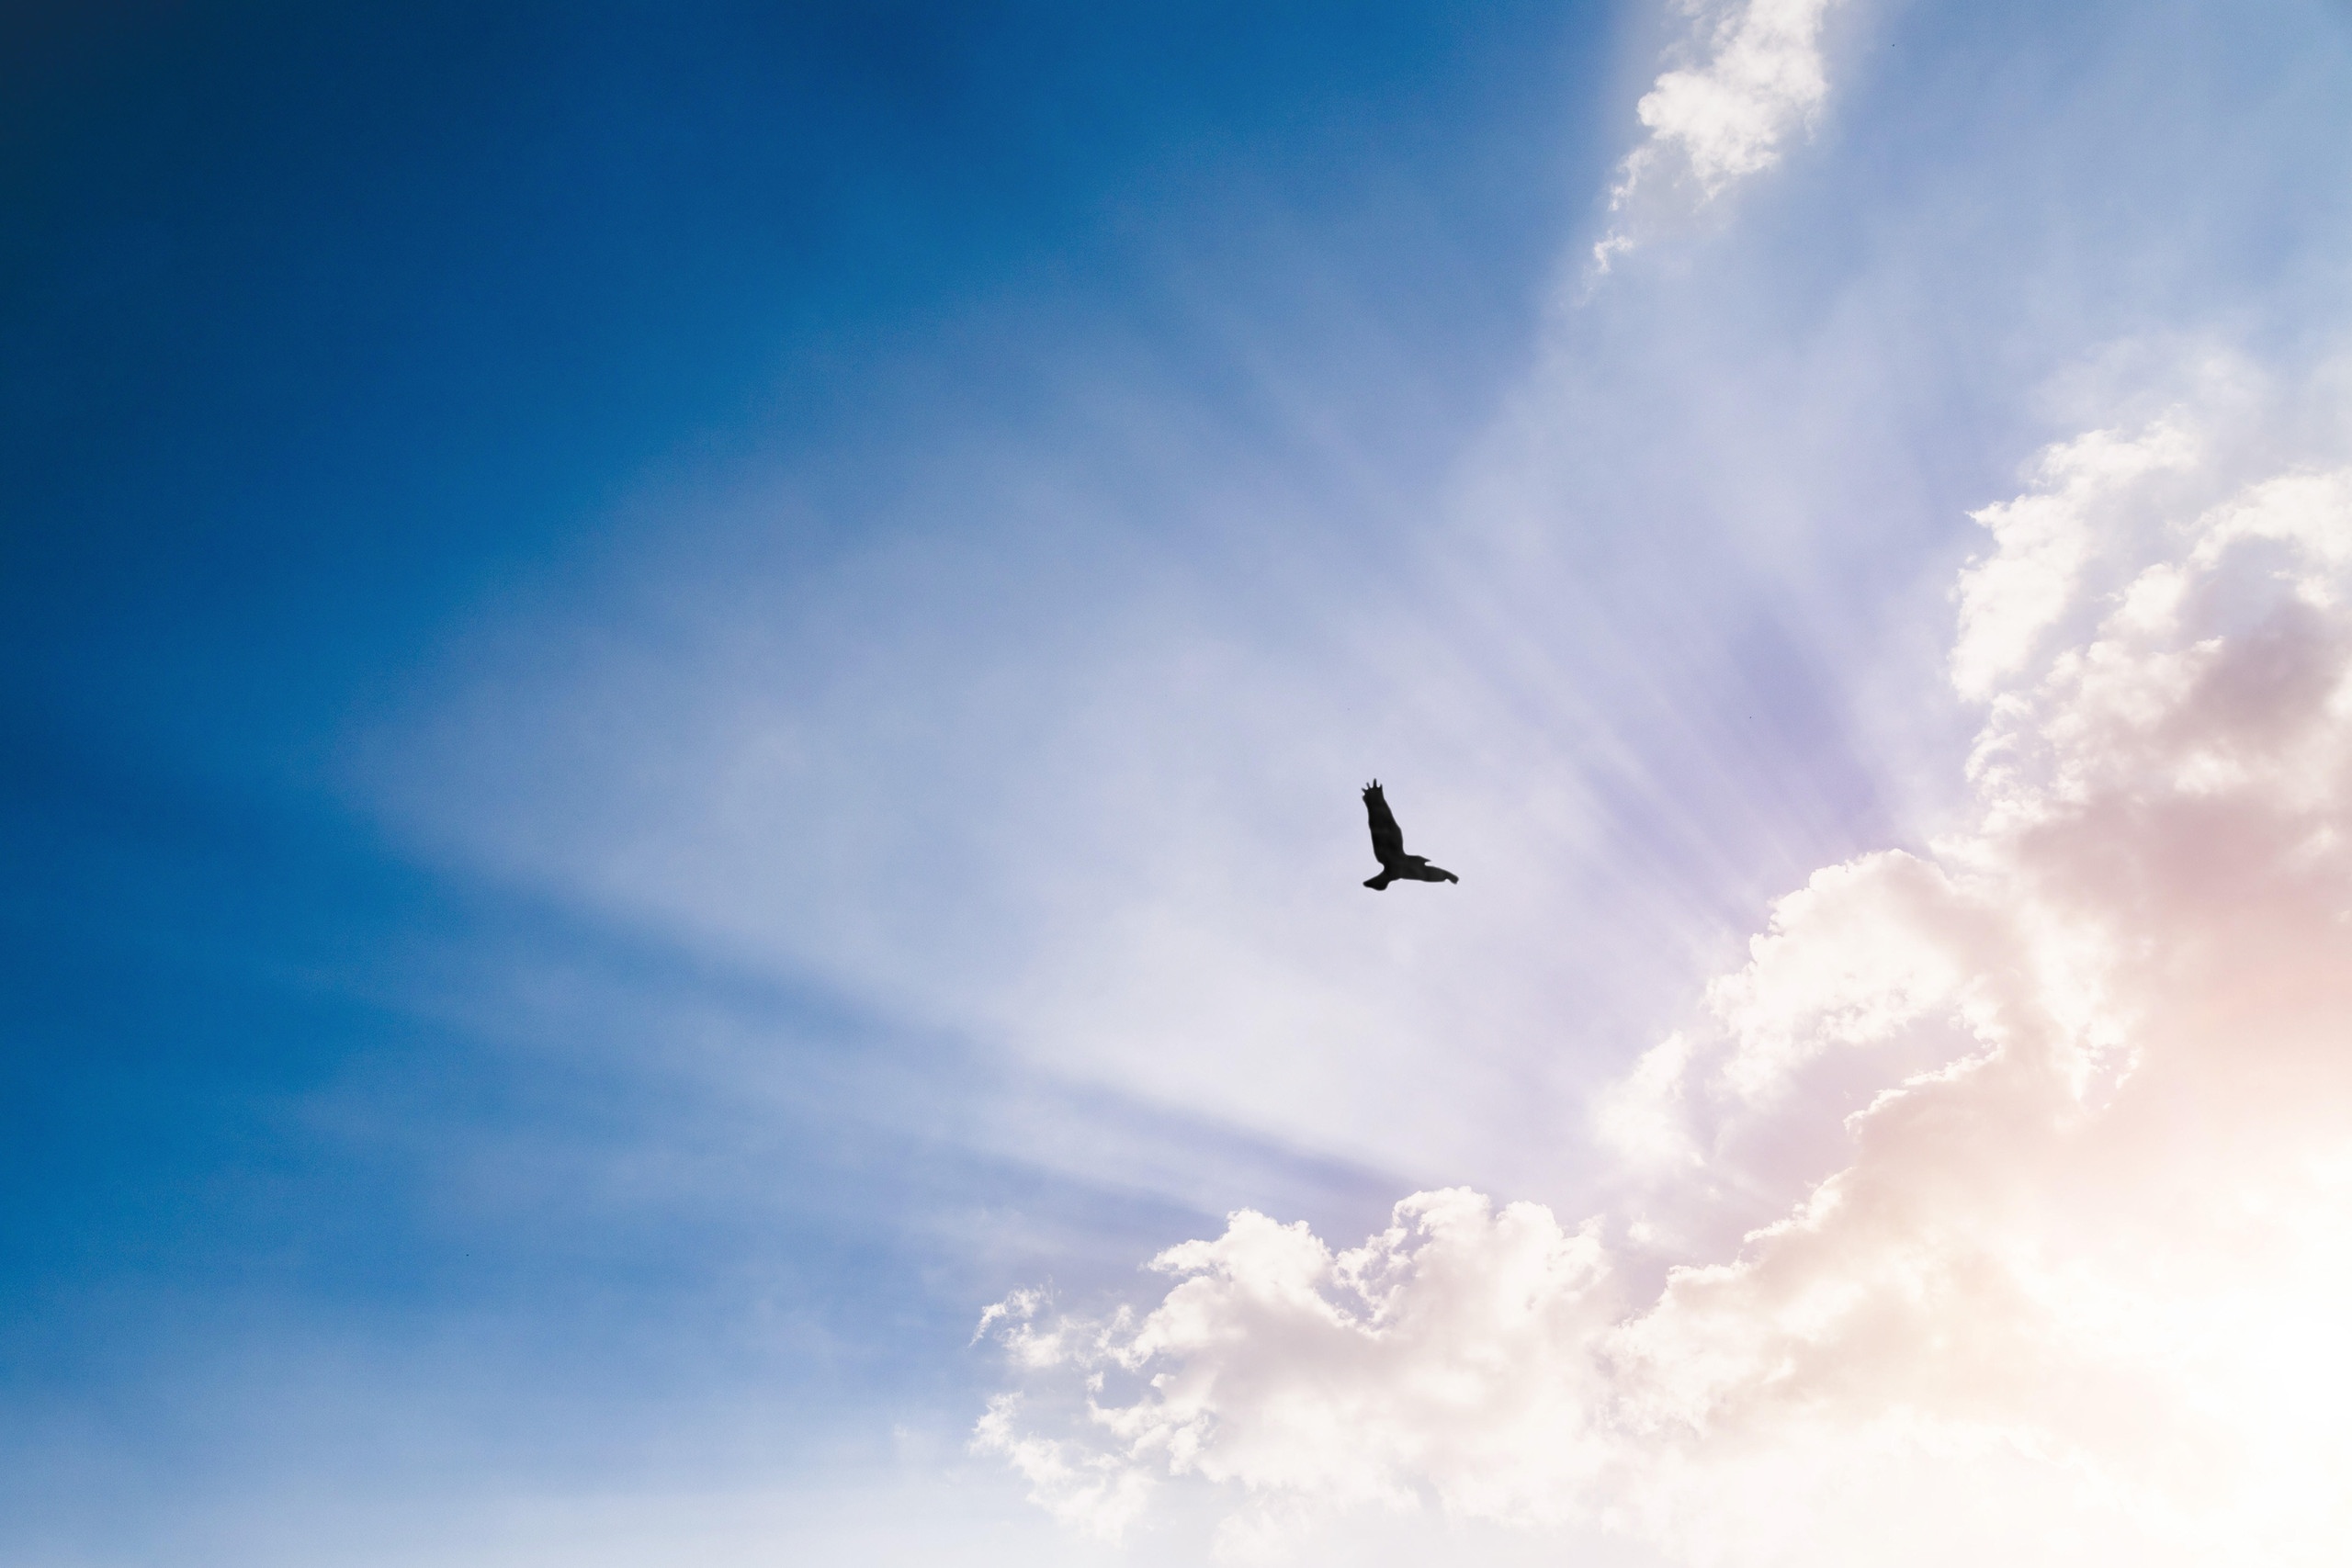 Sonne strahlt hinter Wolken. Ein Vogel fliegt am Himmel. | Bild: picture alliance / Zoonar | Patrick Daxenbichler